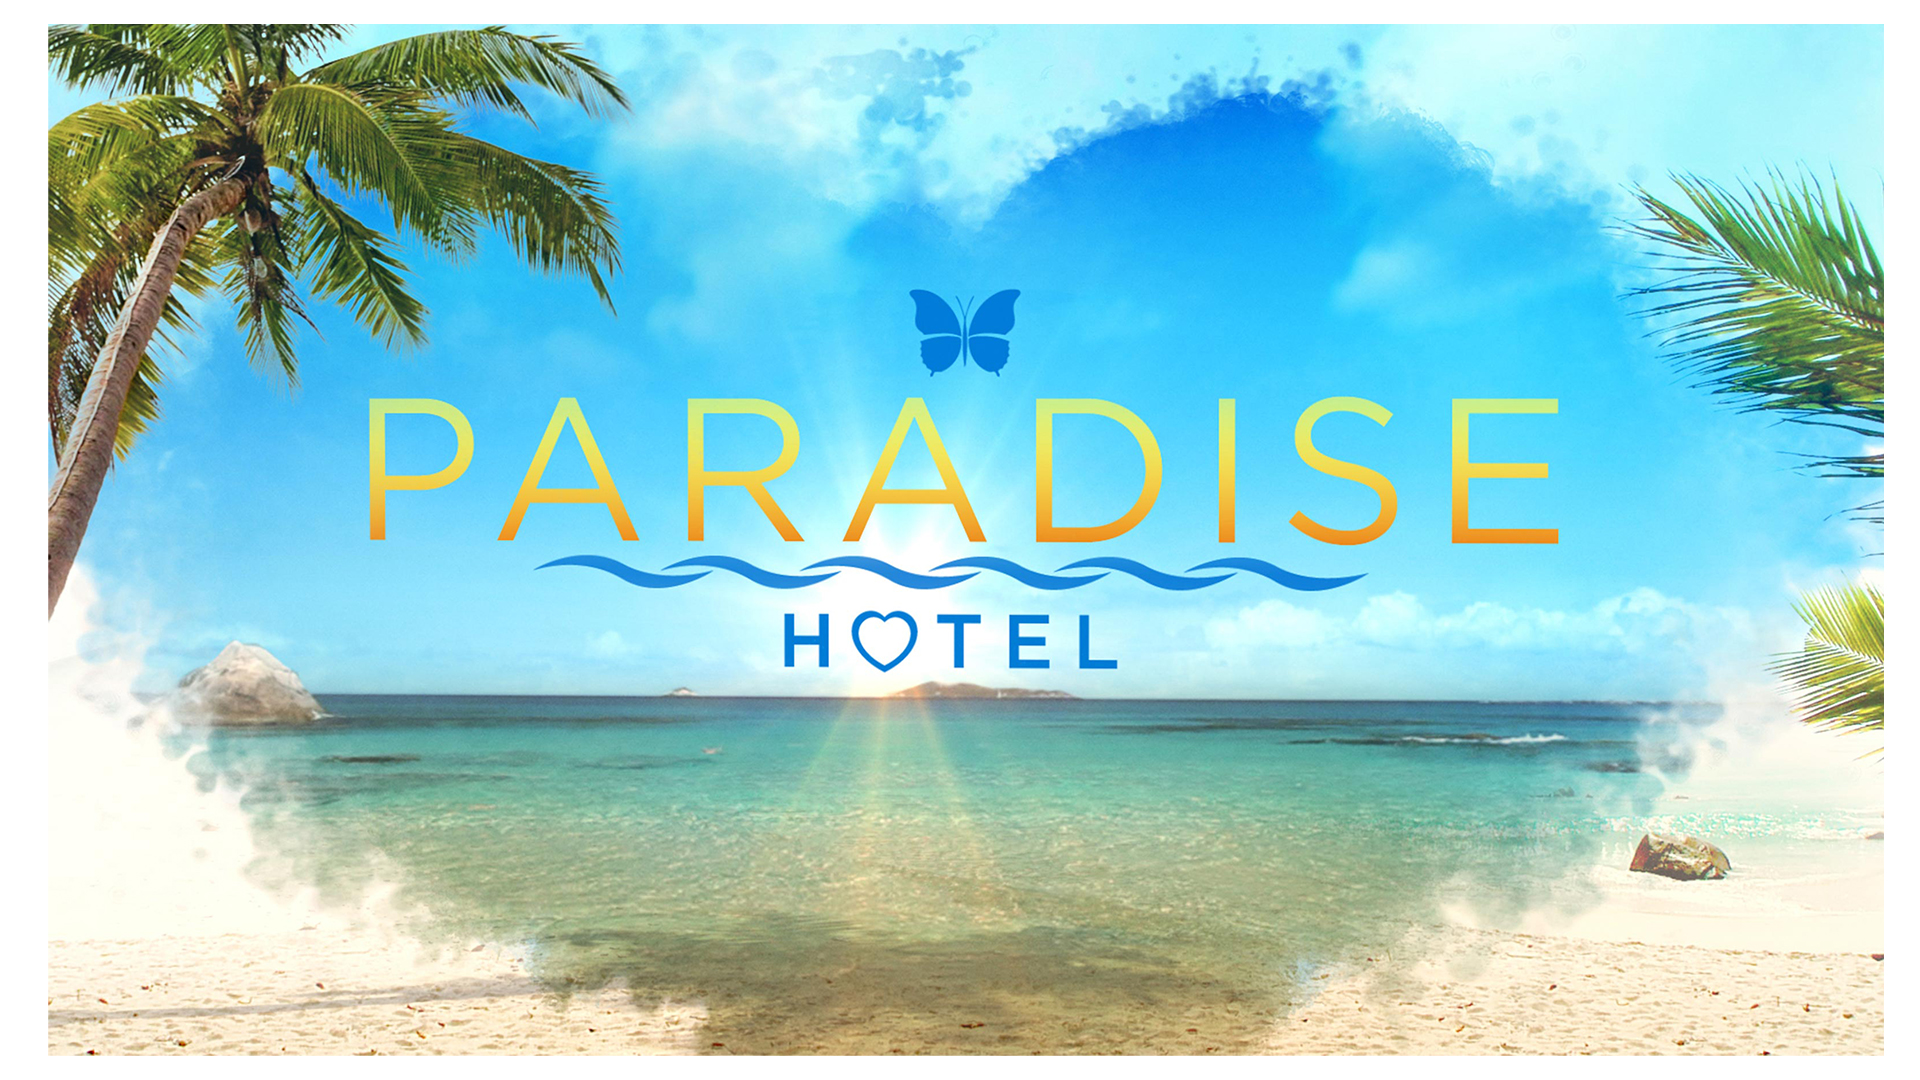 Paradise Hotel US Image